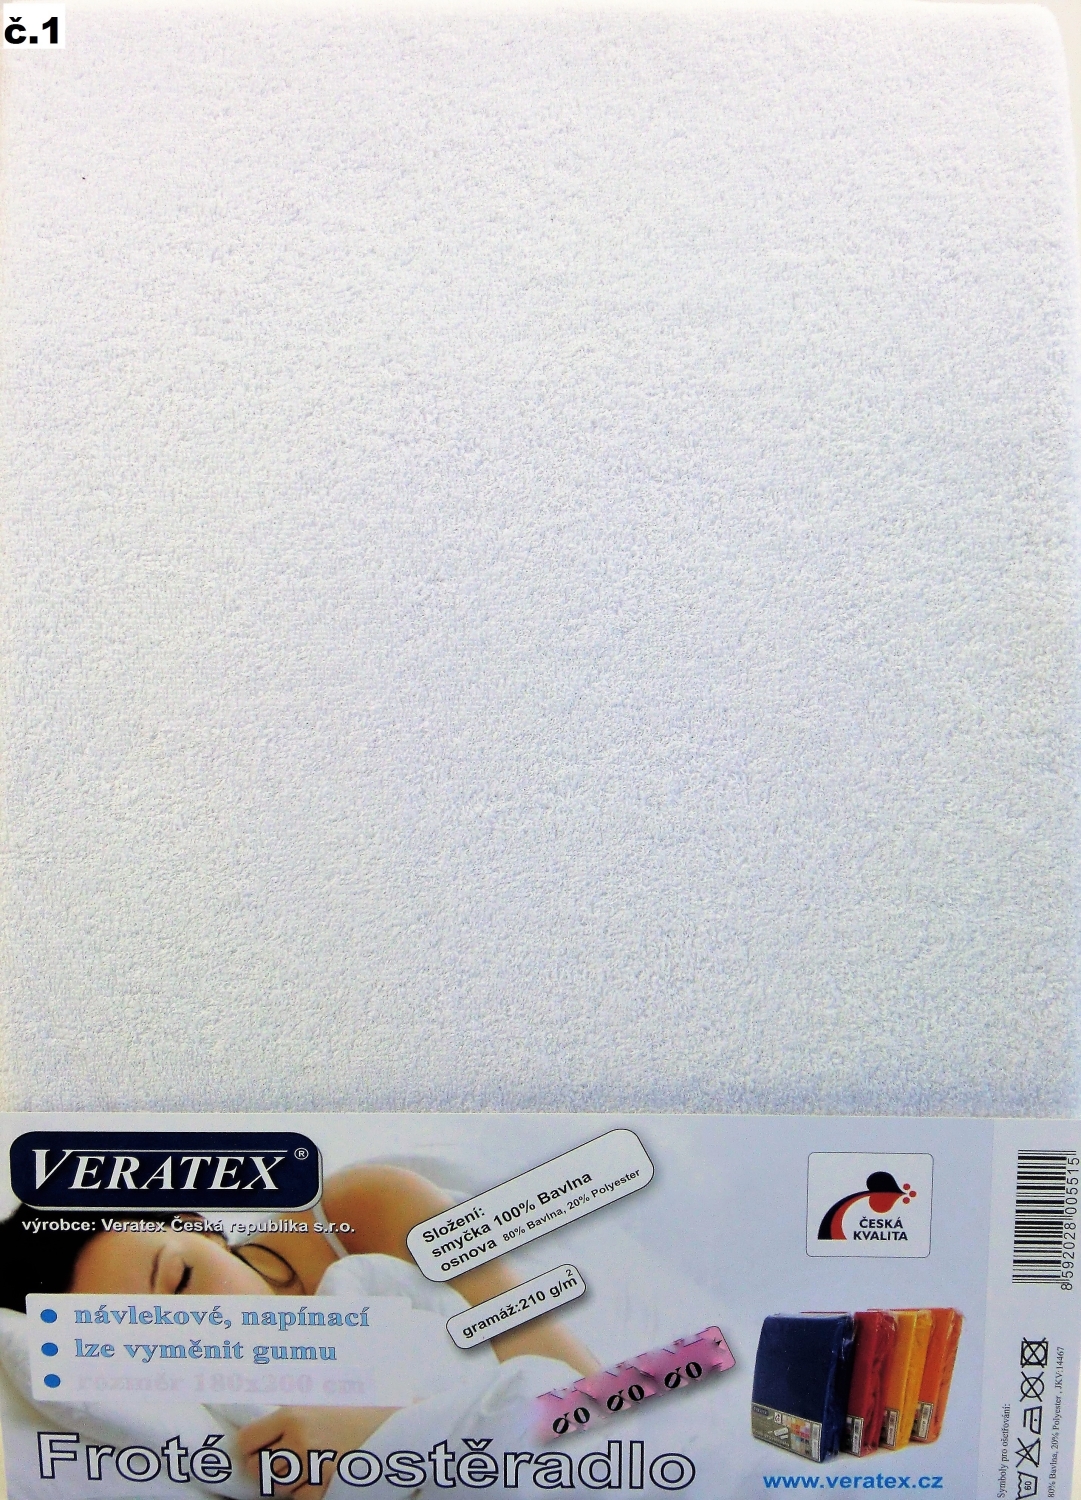 Veratex Froté prostěradlo jednolůžko 80x200/25cm (č. 1-bílé)